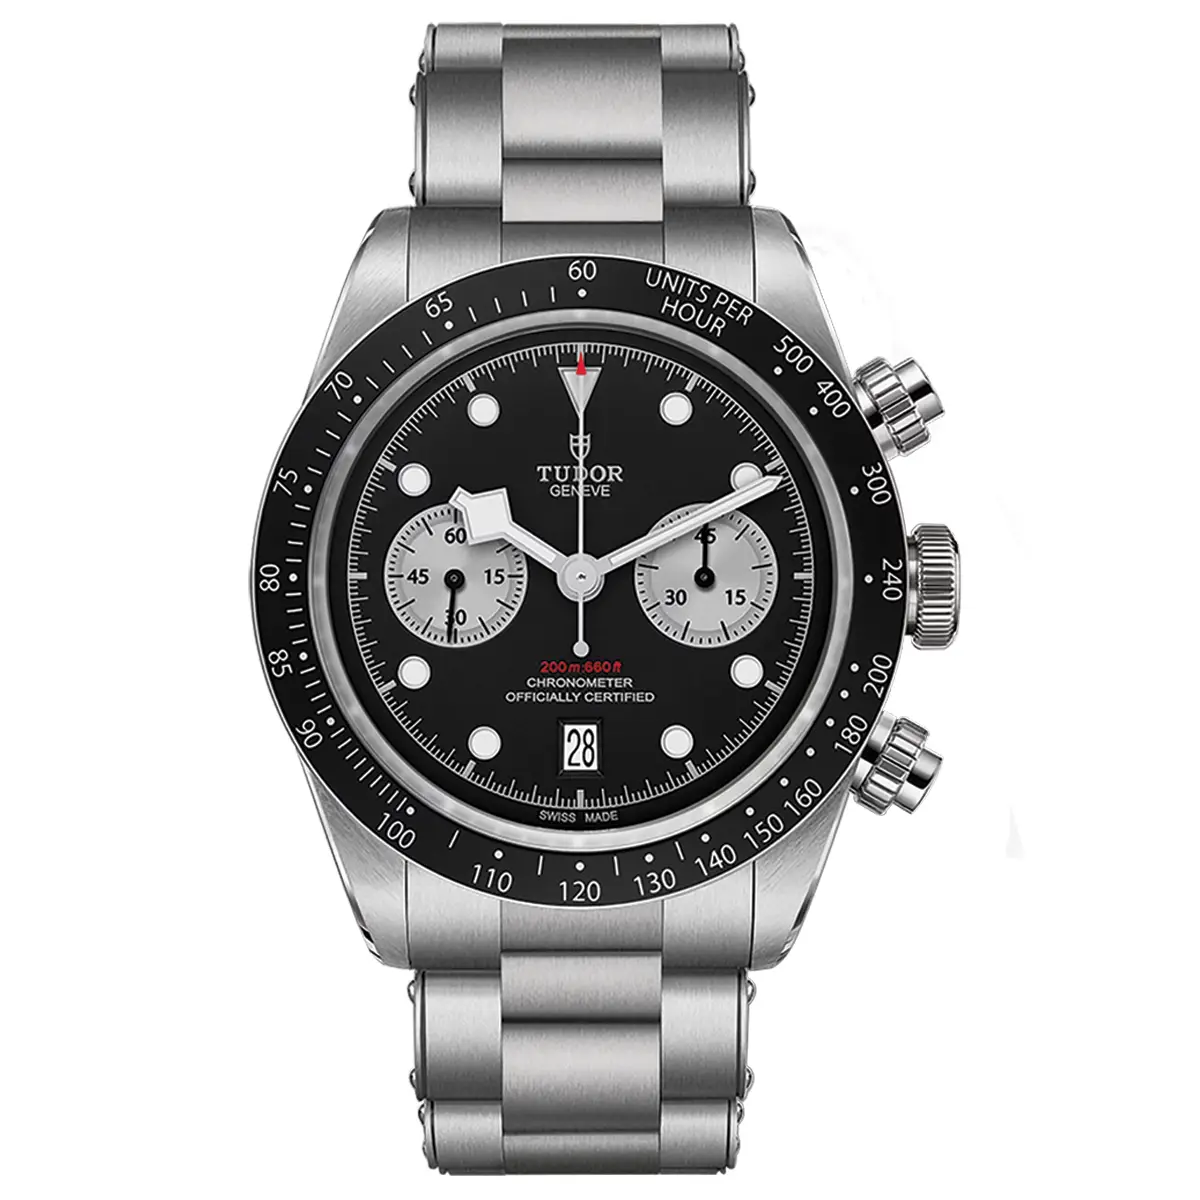 Đồng hồ Tudor Black Bay Chrono M79360N-0001 mặt số màu đen. Dây đeo bằng thép. Thân vỏ bằng thép.